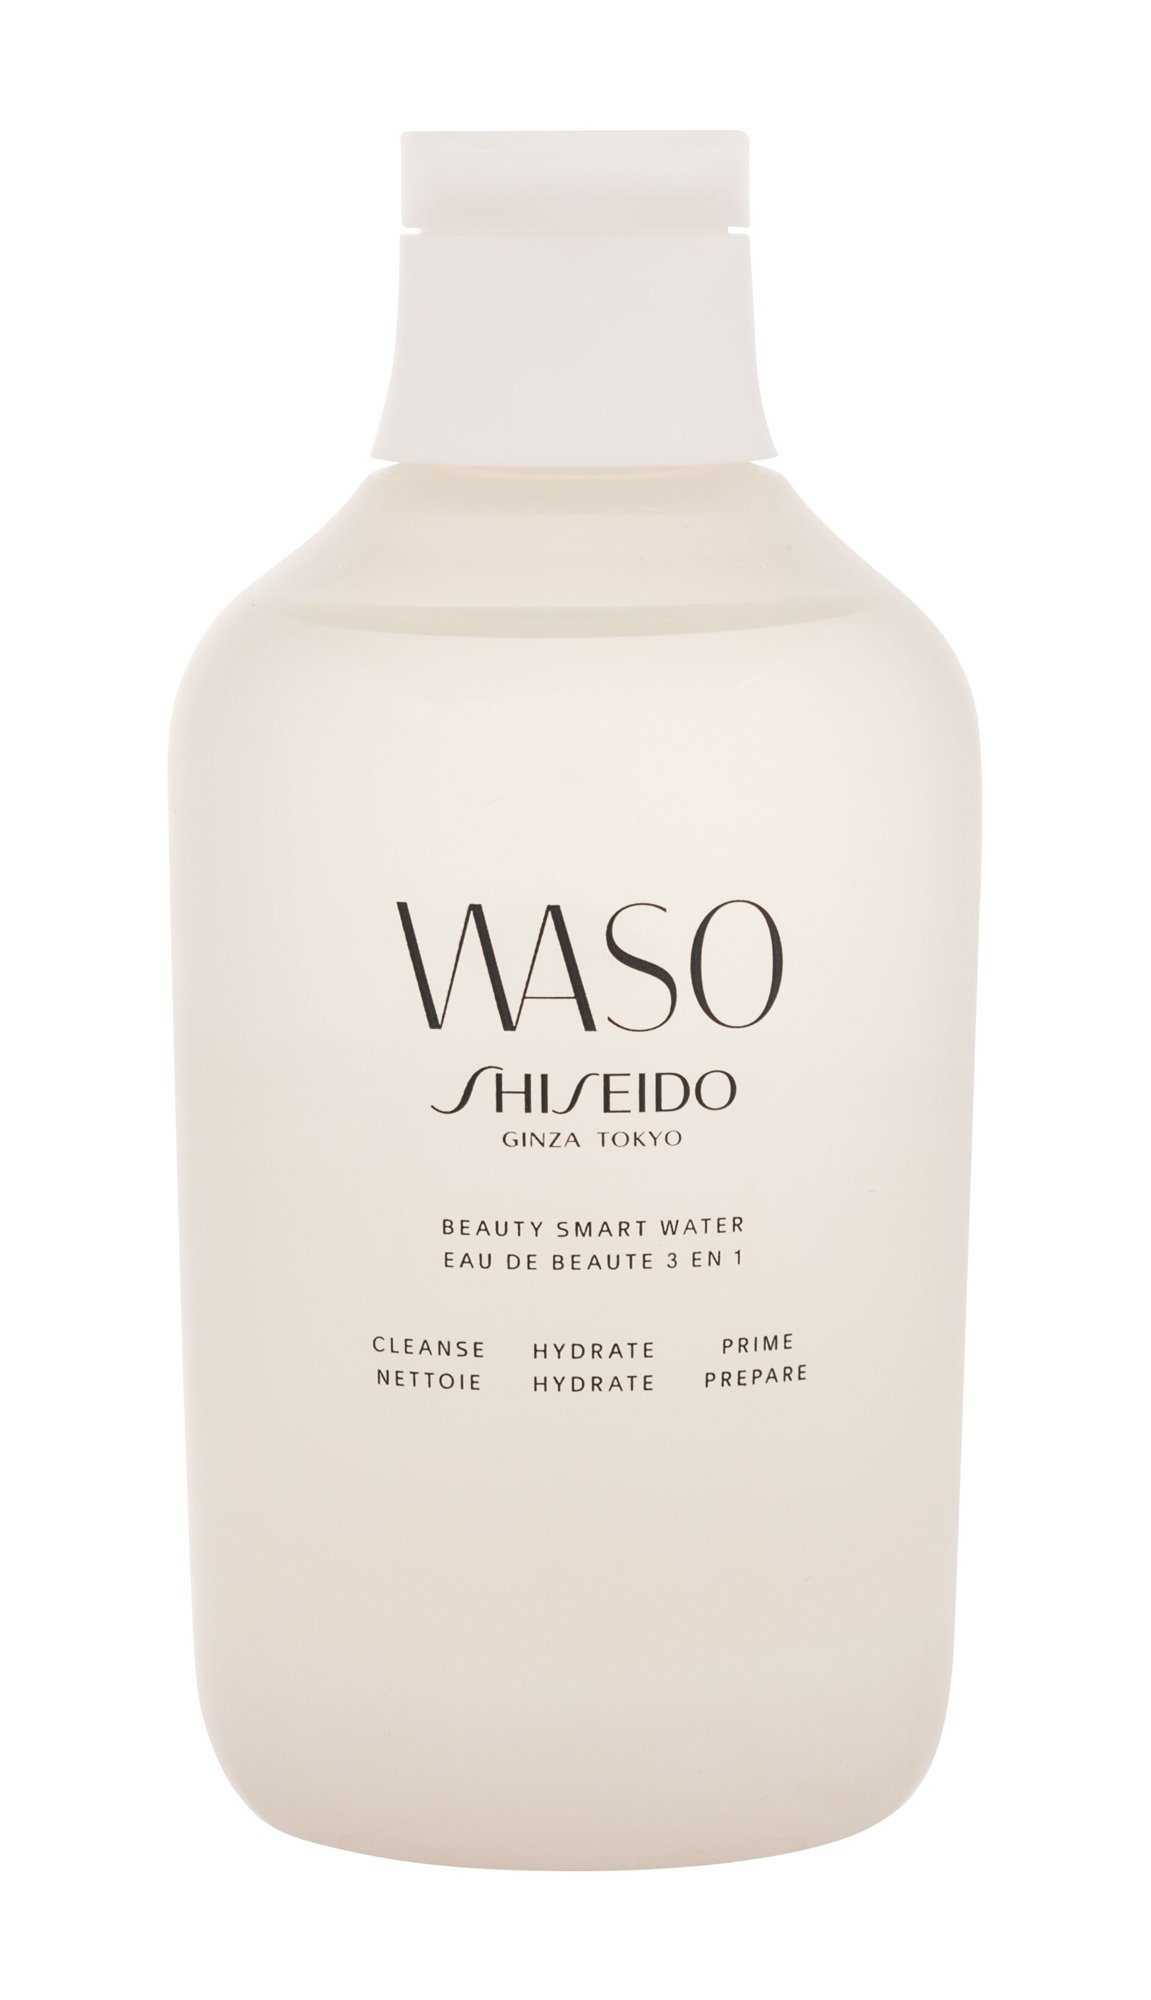 Shiseido Waso Beauty Smart Water 250ml valomasis vanduo veidui